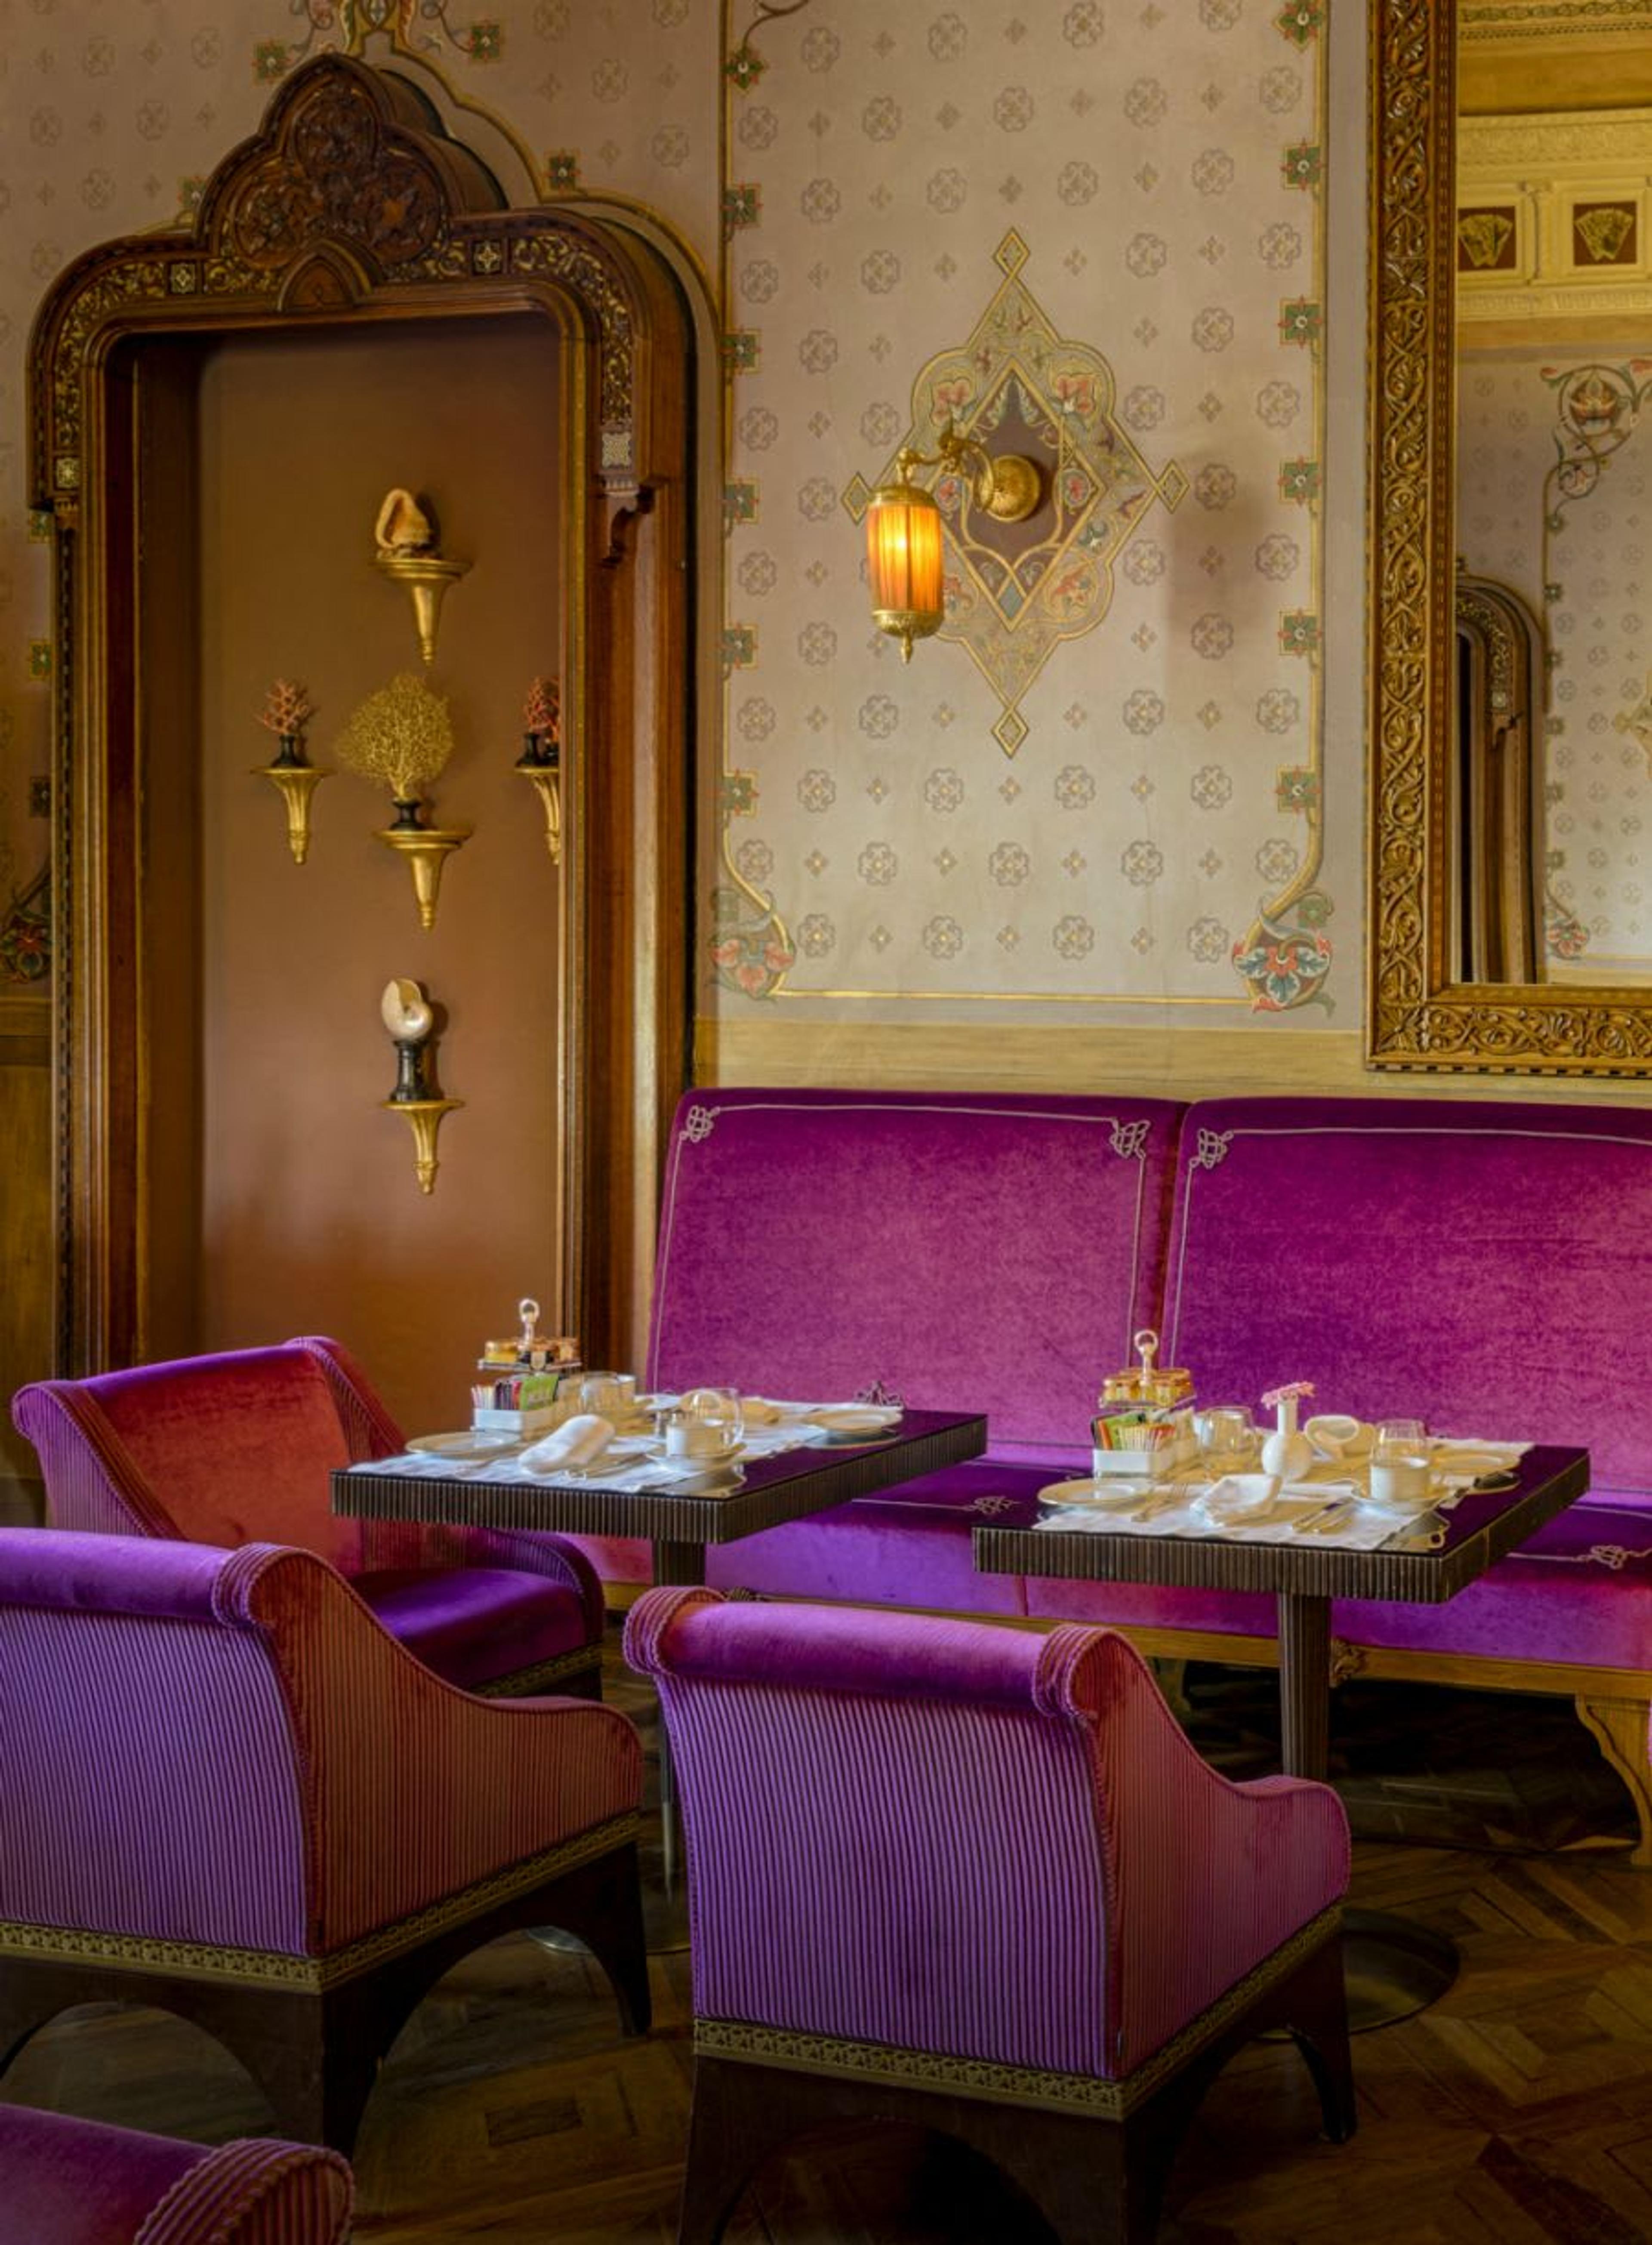 Frühstück im Kartenzimmer der Villa - lilafarbene Samtstühle, zarte goldene Fresken, Parkettboden und handgeschnitzte, holzgerahmte Spiegel an den Wänden.